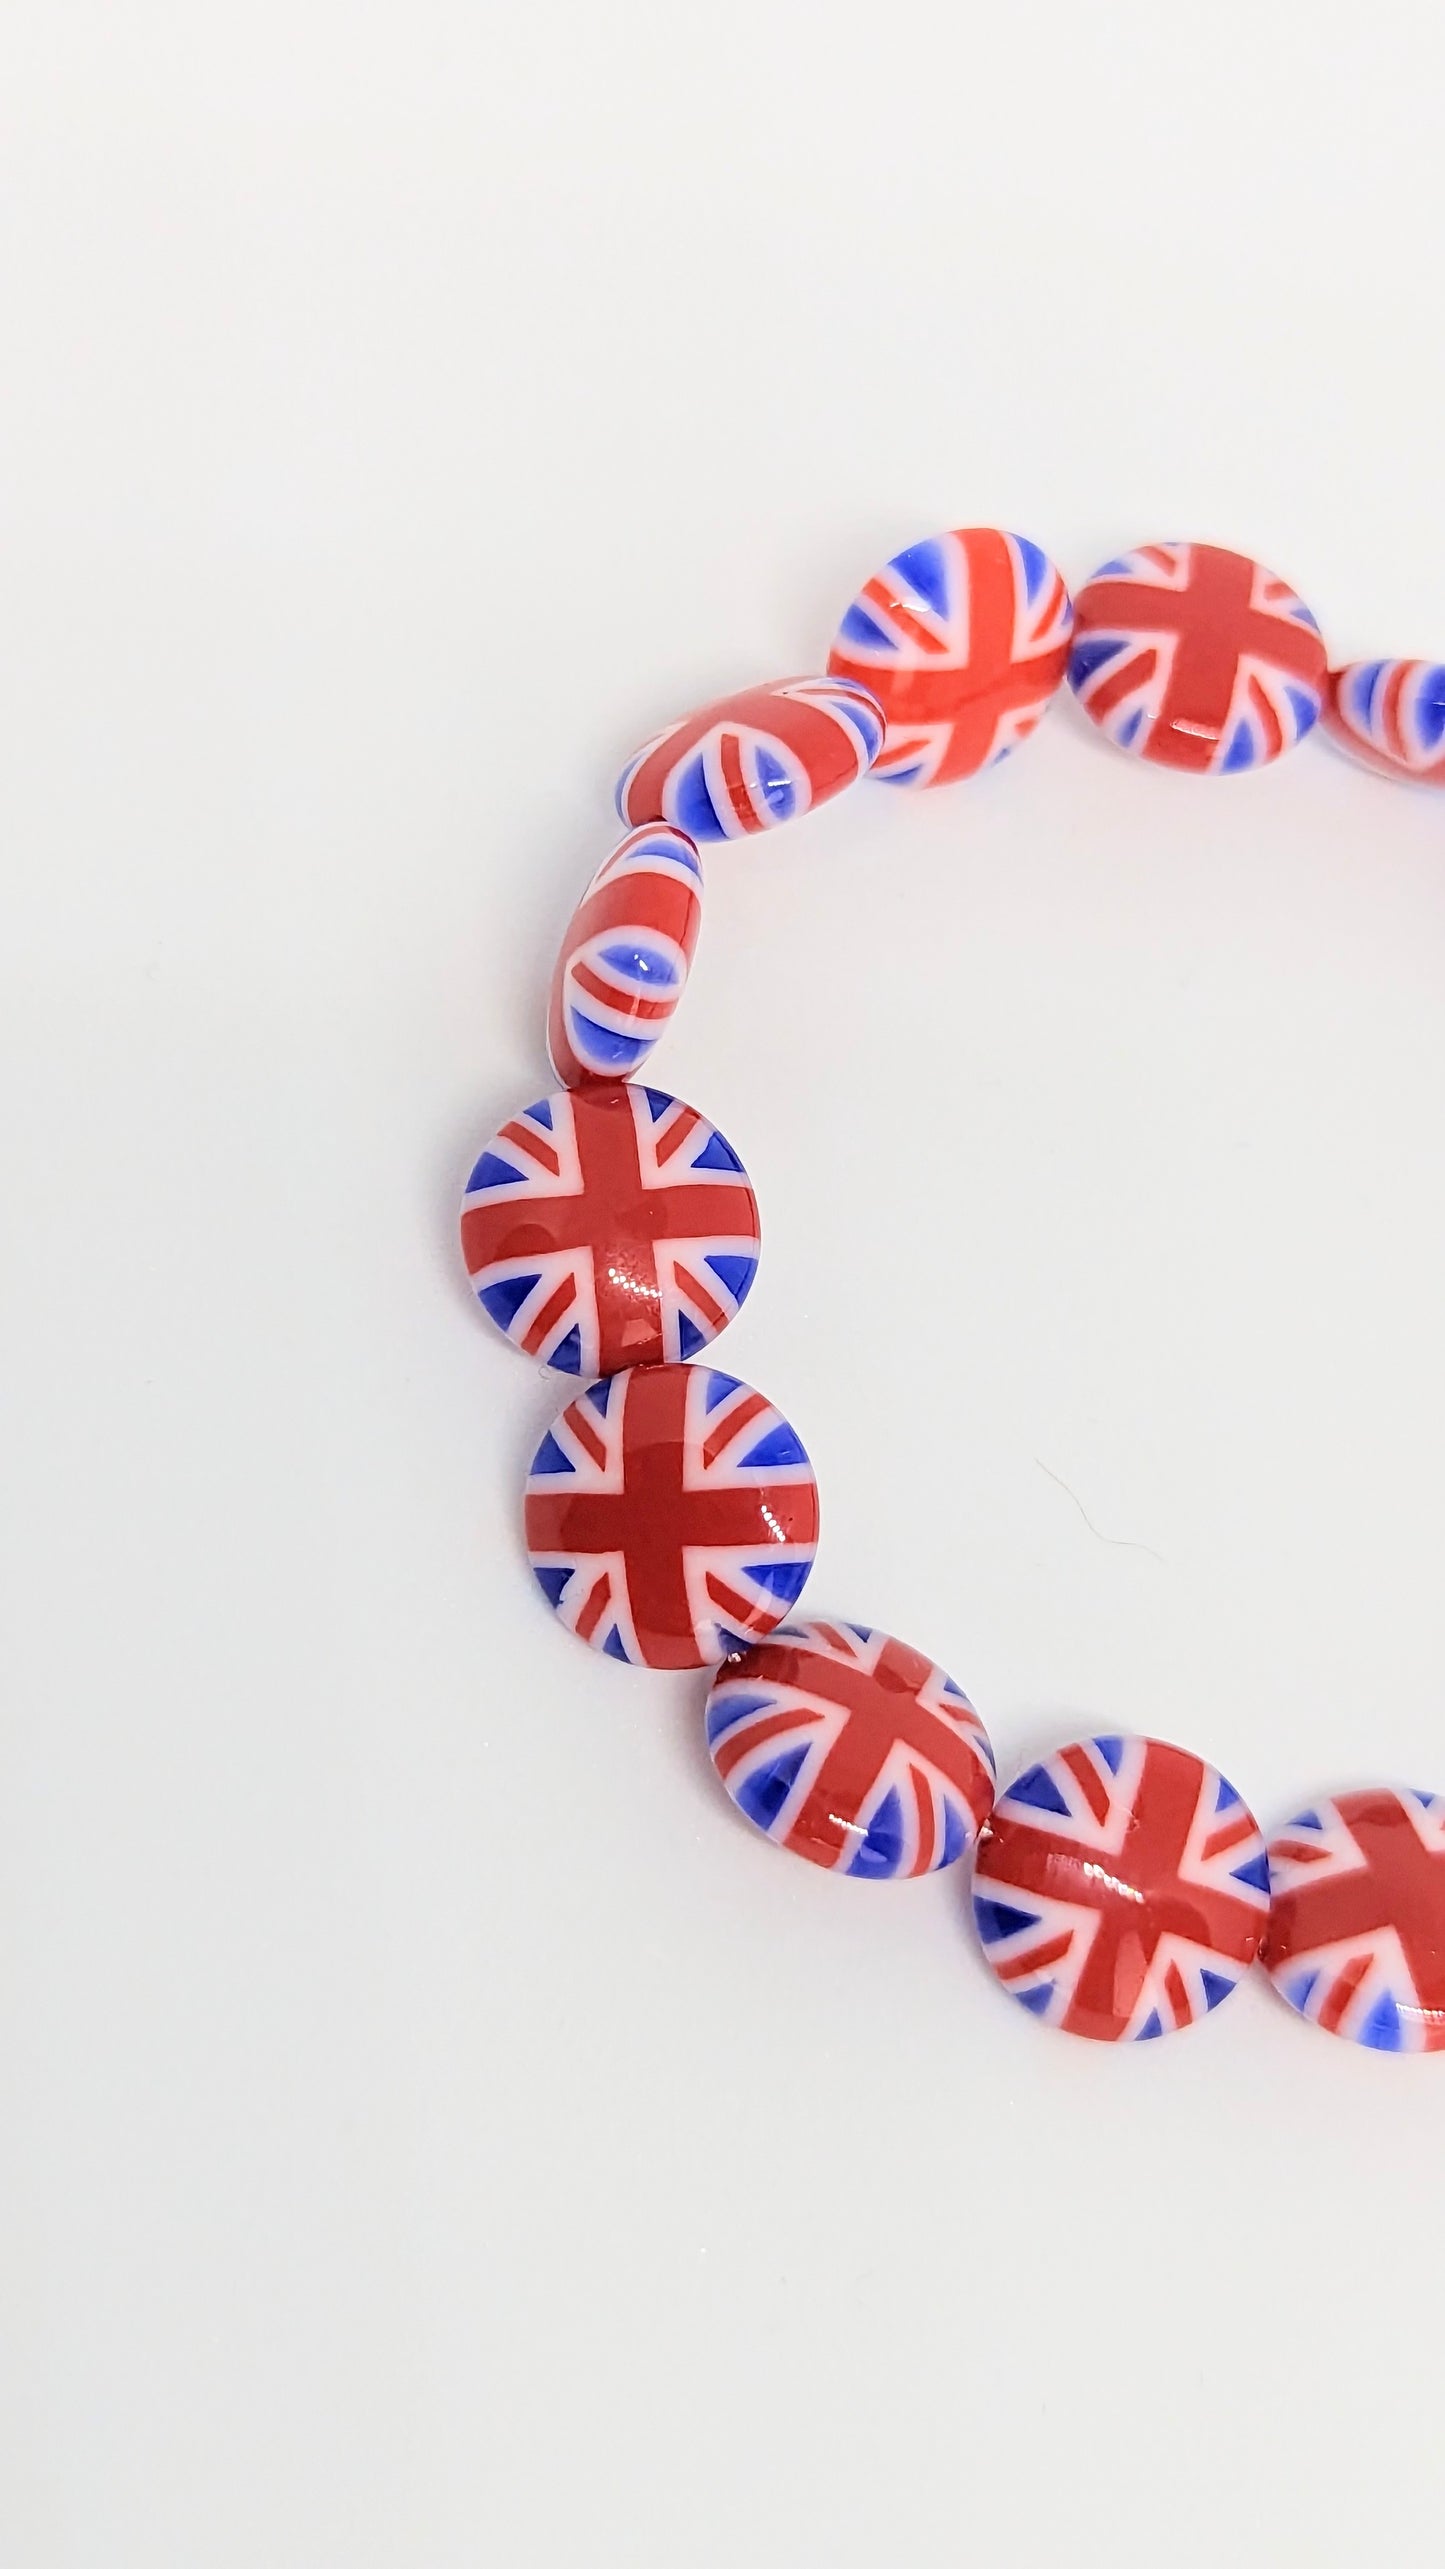 King's Coronation, Union Jack, Flag bracelet, British Flag, Patriotic jewellery, United Kingdom